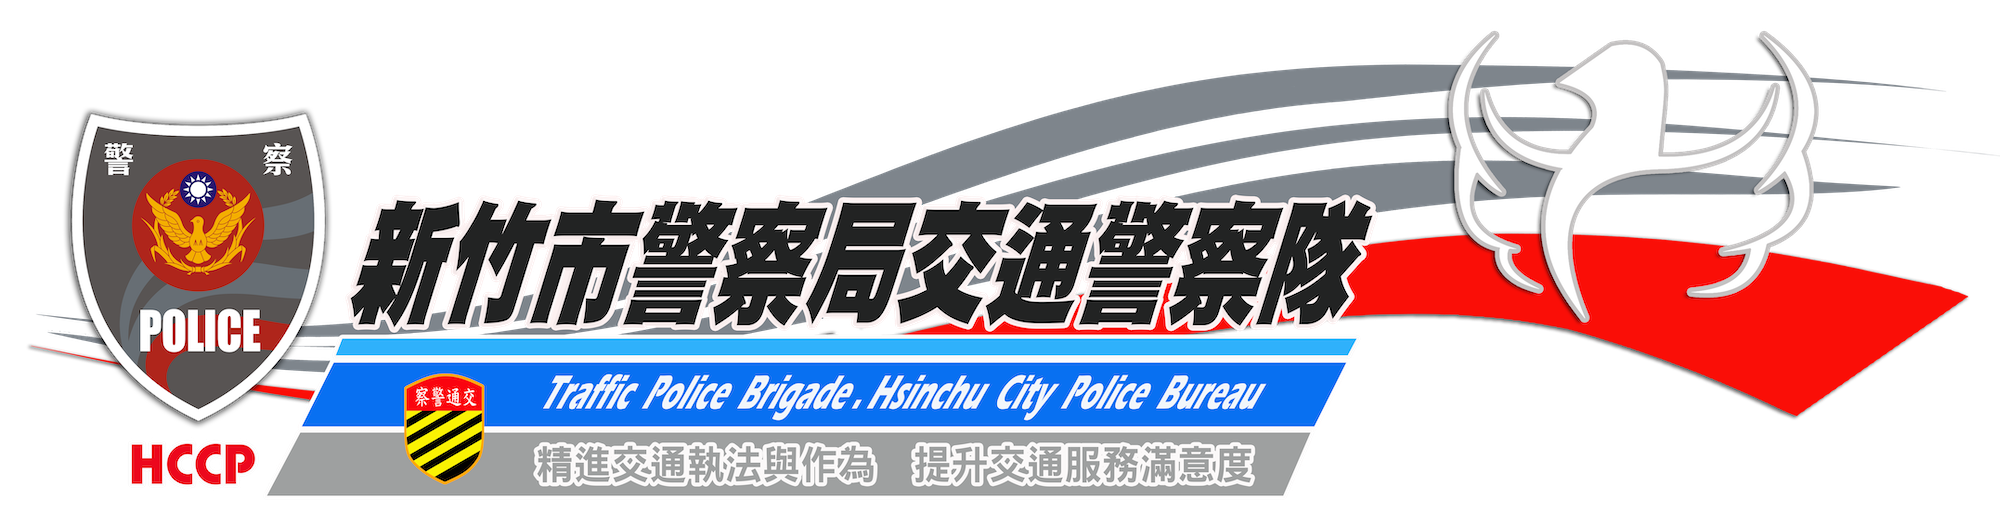 新竹市警察局LOGO